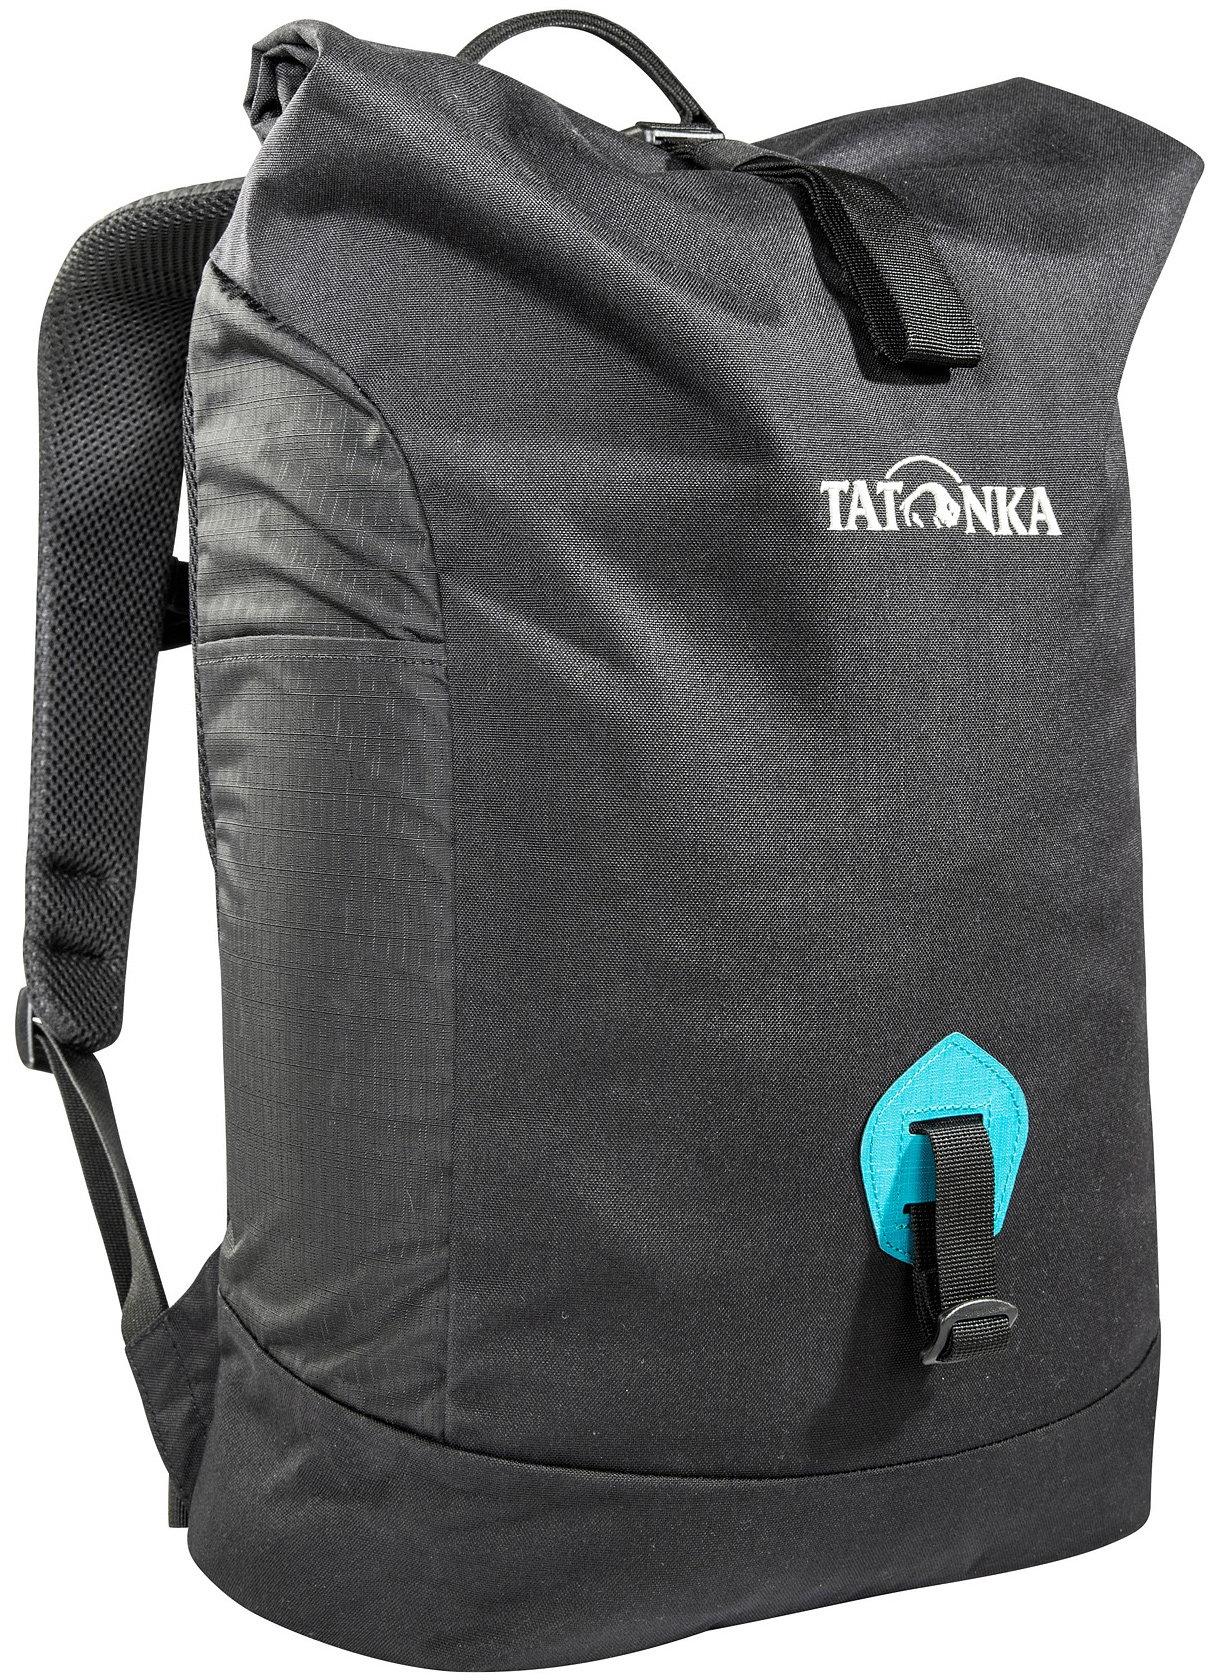 Tatonka Grip Rolltop Pack s 25l black